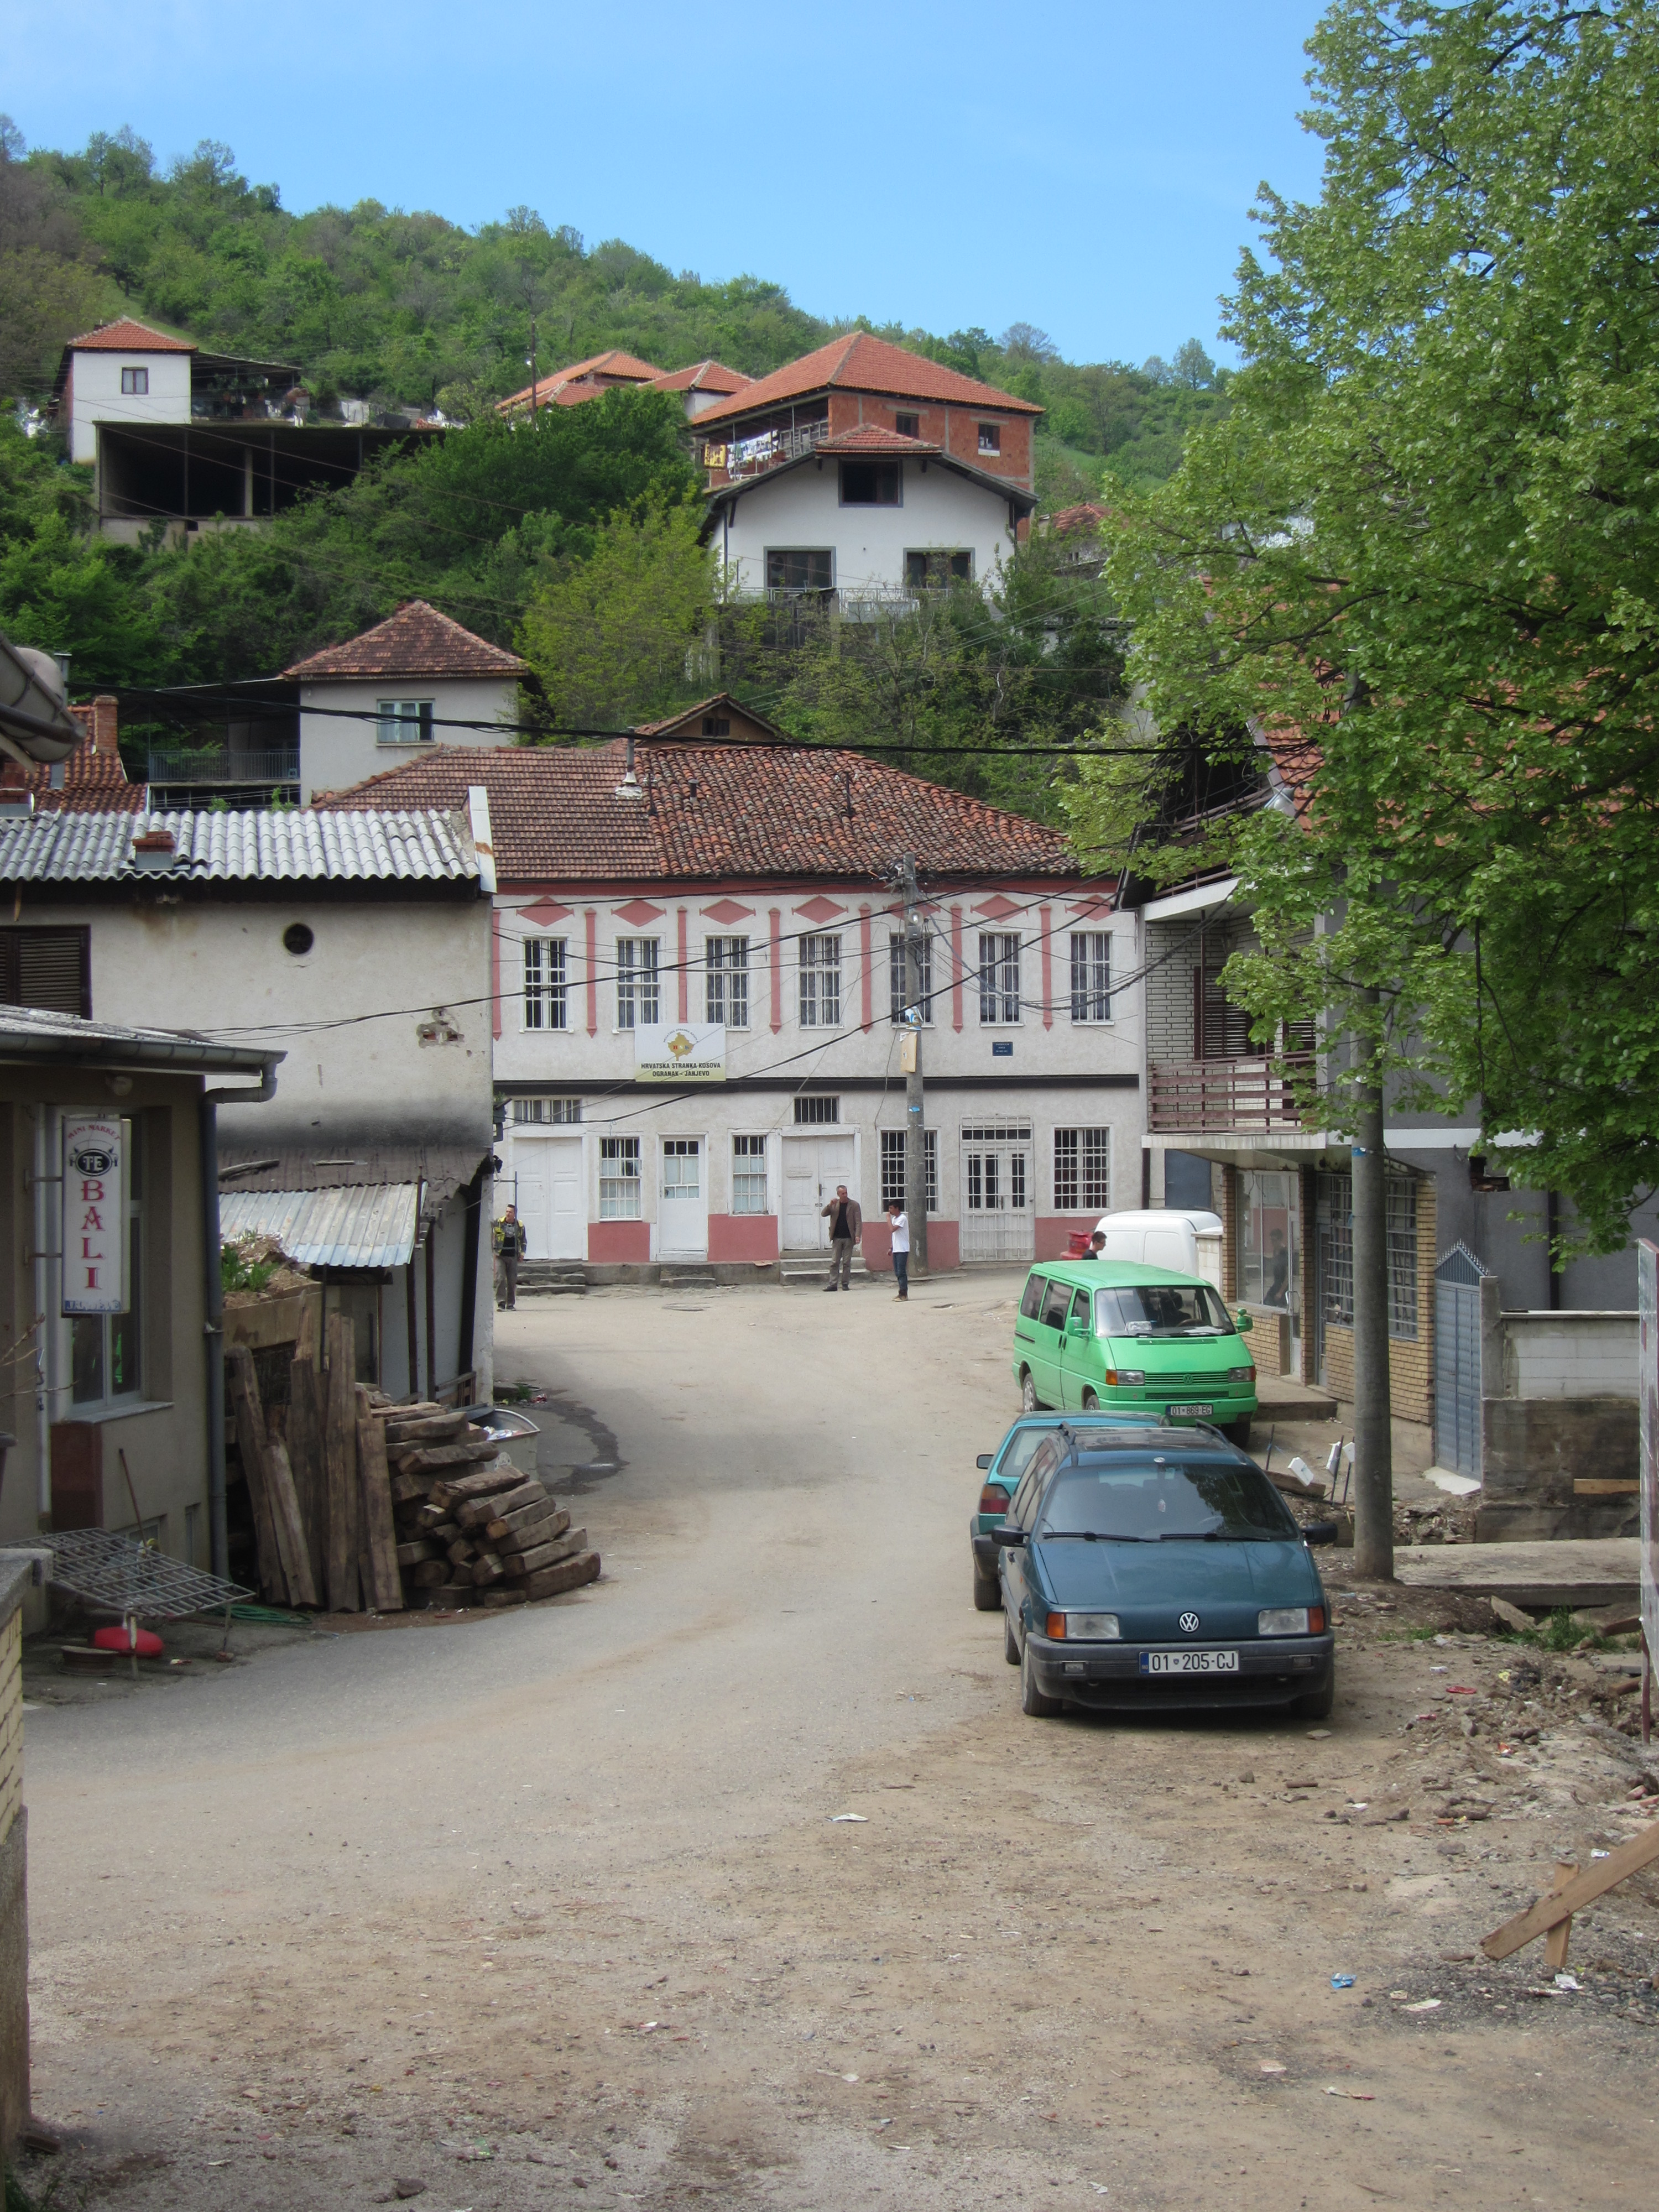 The Janjeva Janjevo marketplace